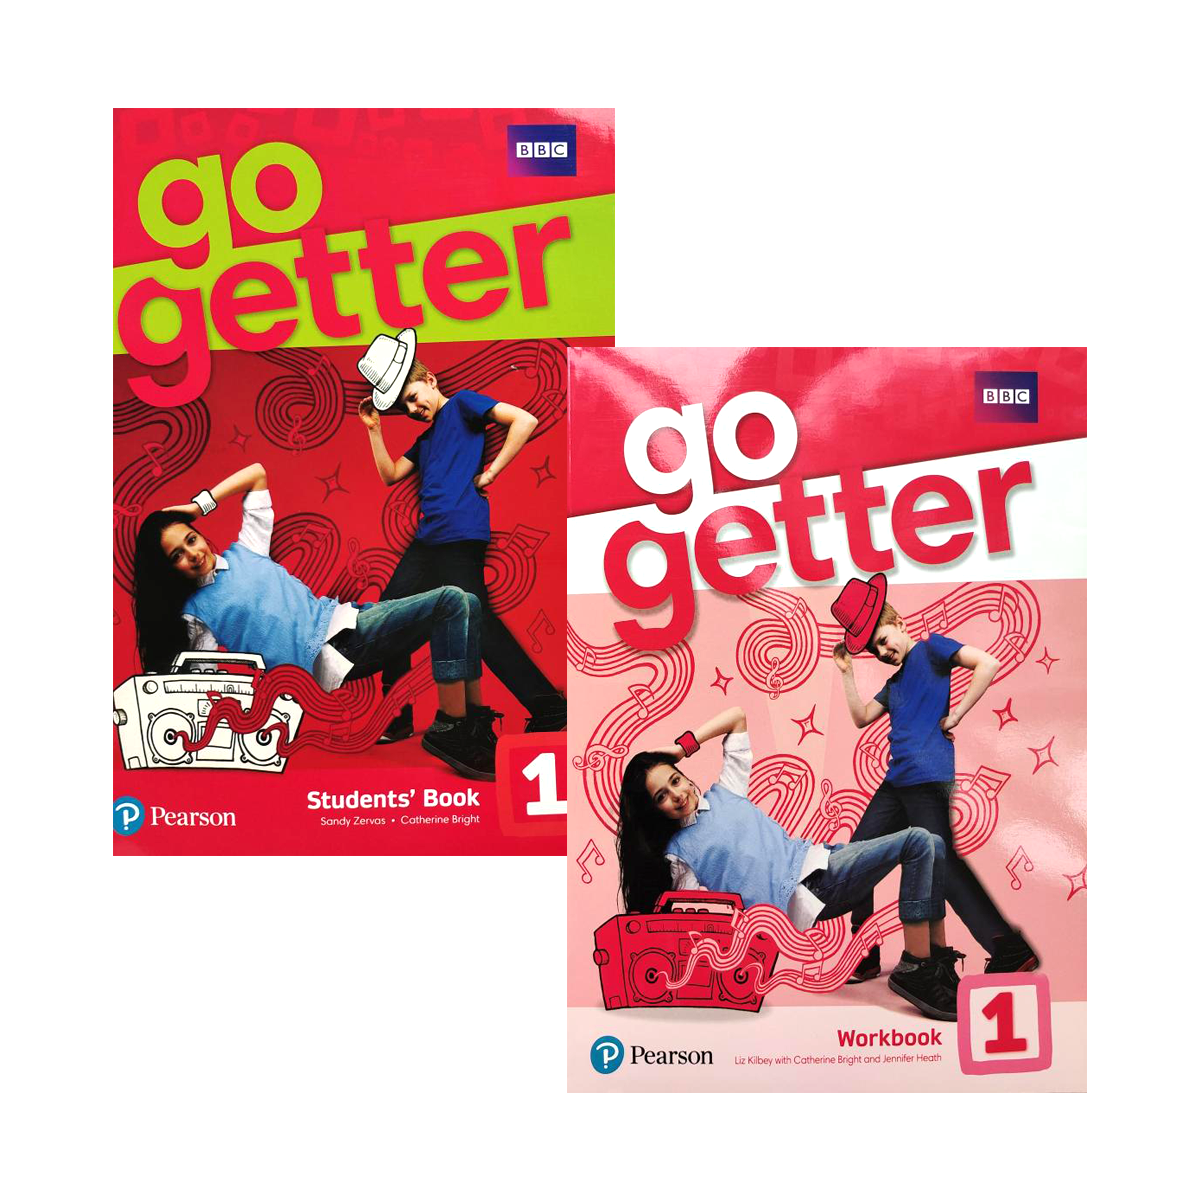 Go getter 3 рабочая тетрадь. Go Getter 1. Учебник go Getter 1. Учебник Pearson go Getter. Go Getter 2 Workbook.